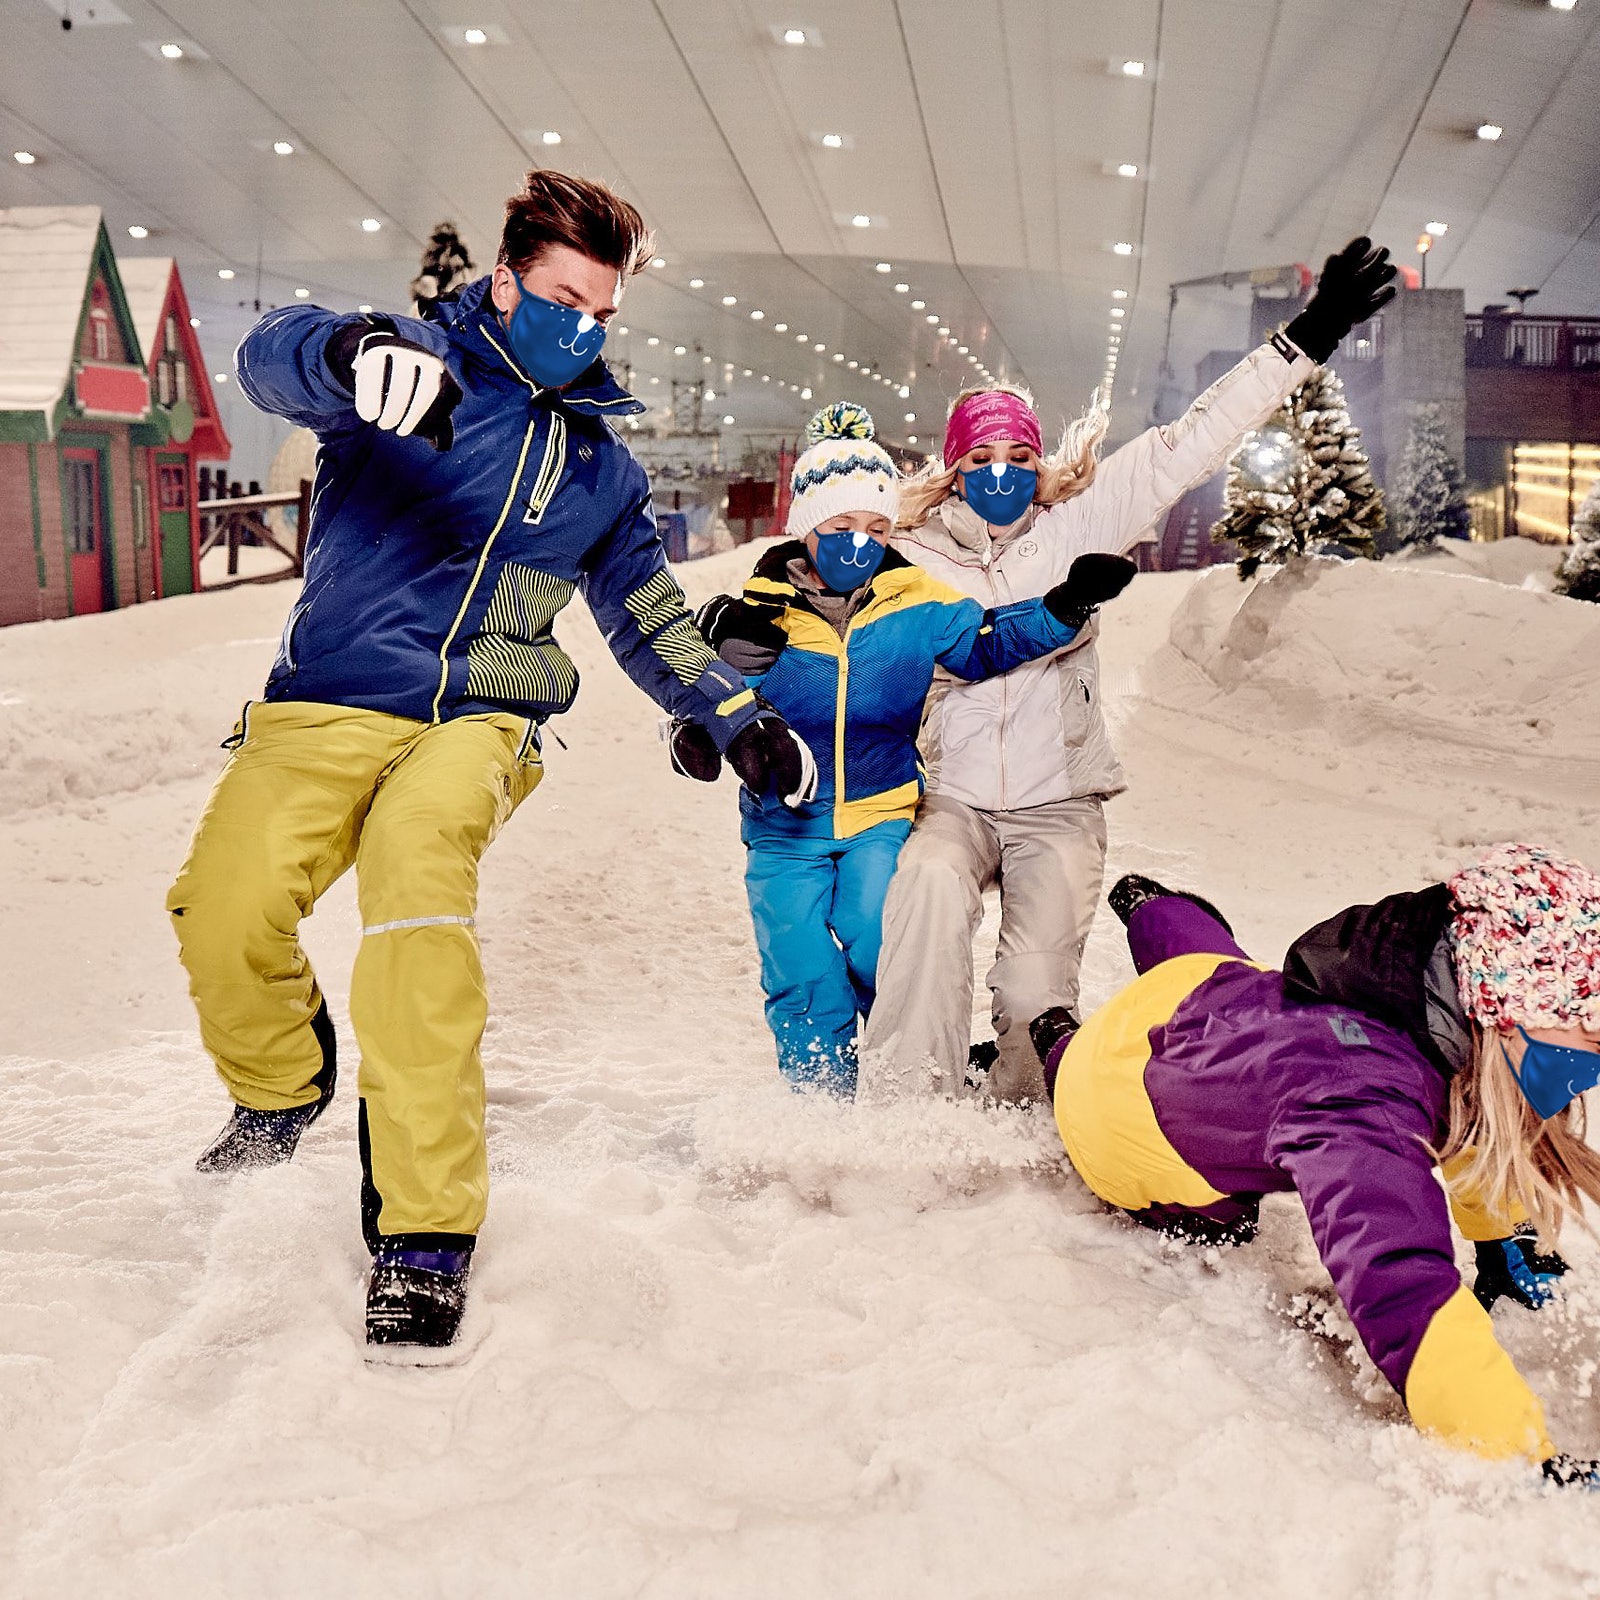 Ski Dubai Snow Park in United Arab Emirates